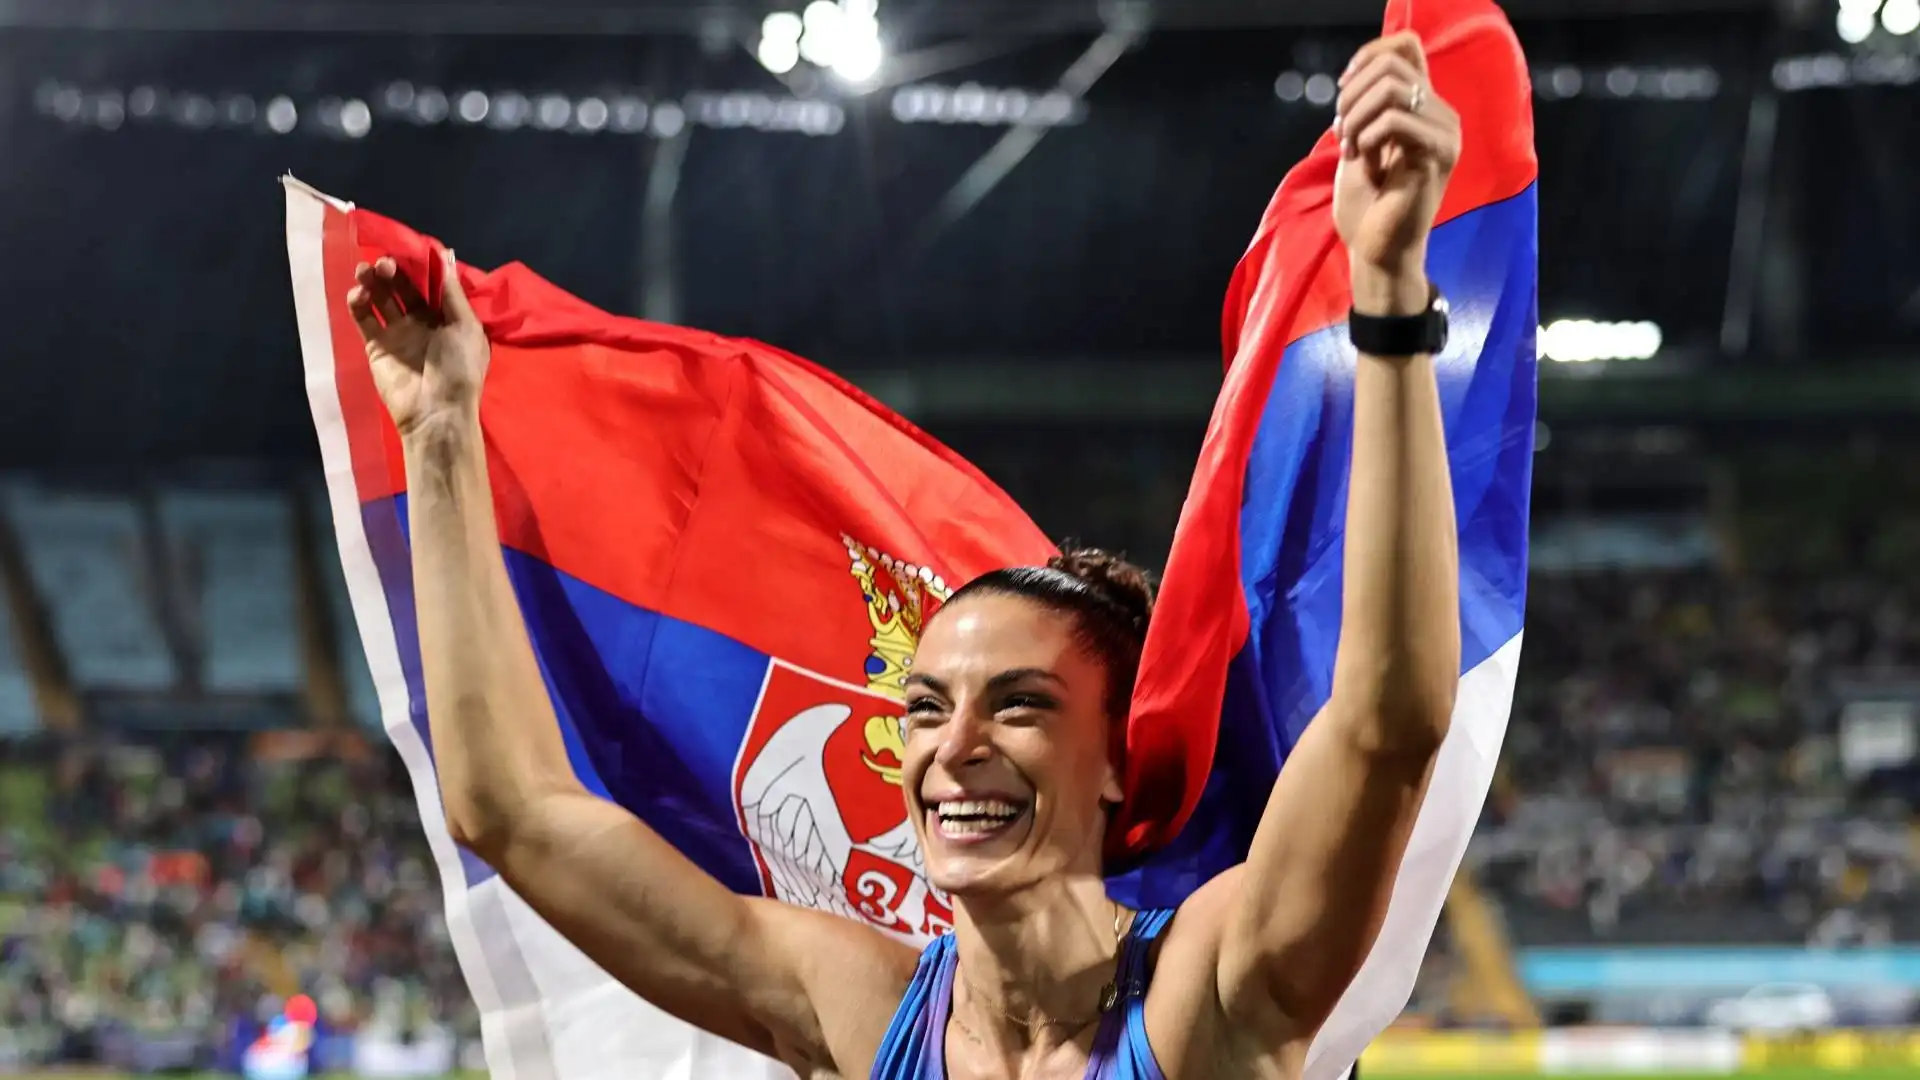 La Vuleta si è laureata campionessa nella finale del salto in lungo femminile agli Europei di Monaco